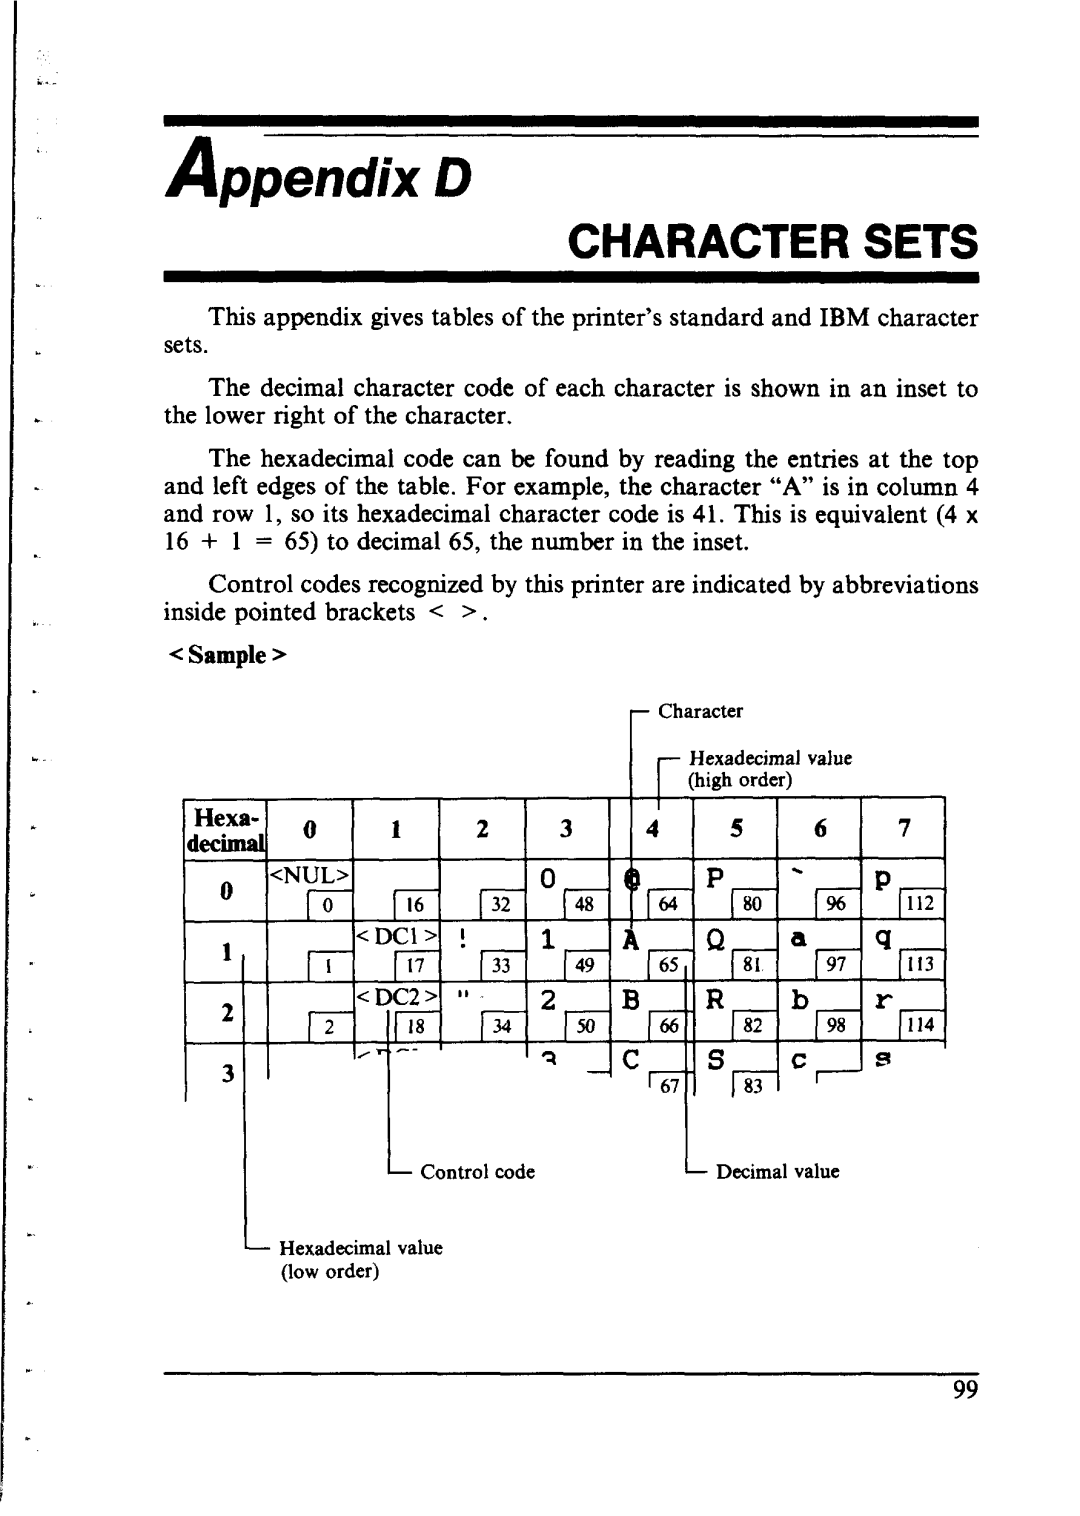 Star Micronics NX-1000 manual Character Sets, Sample, Hexa, P---‘,-.P 